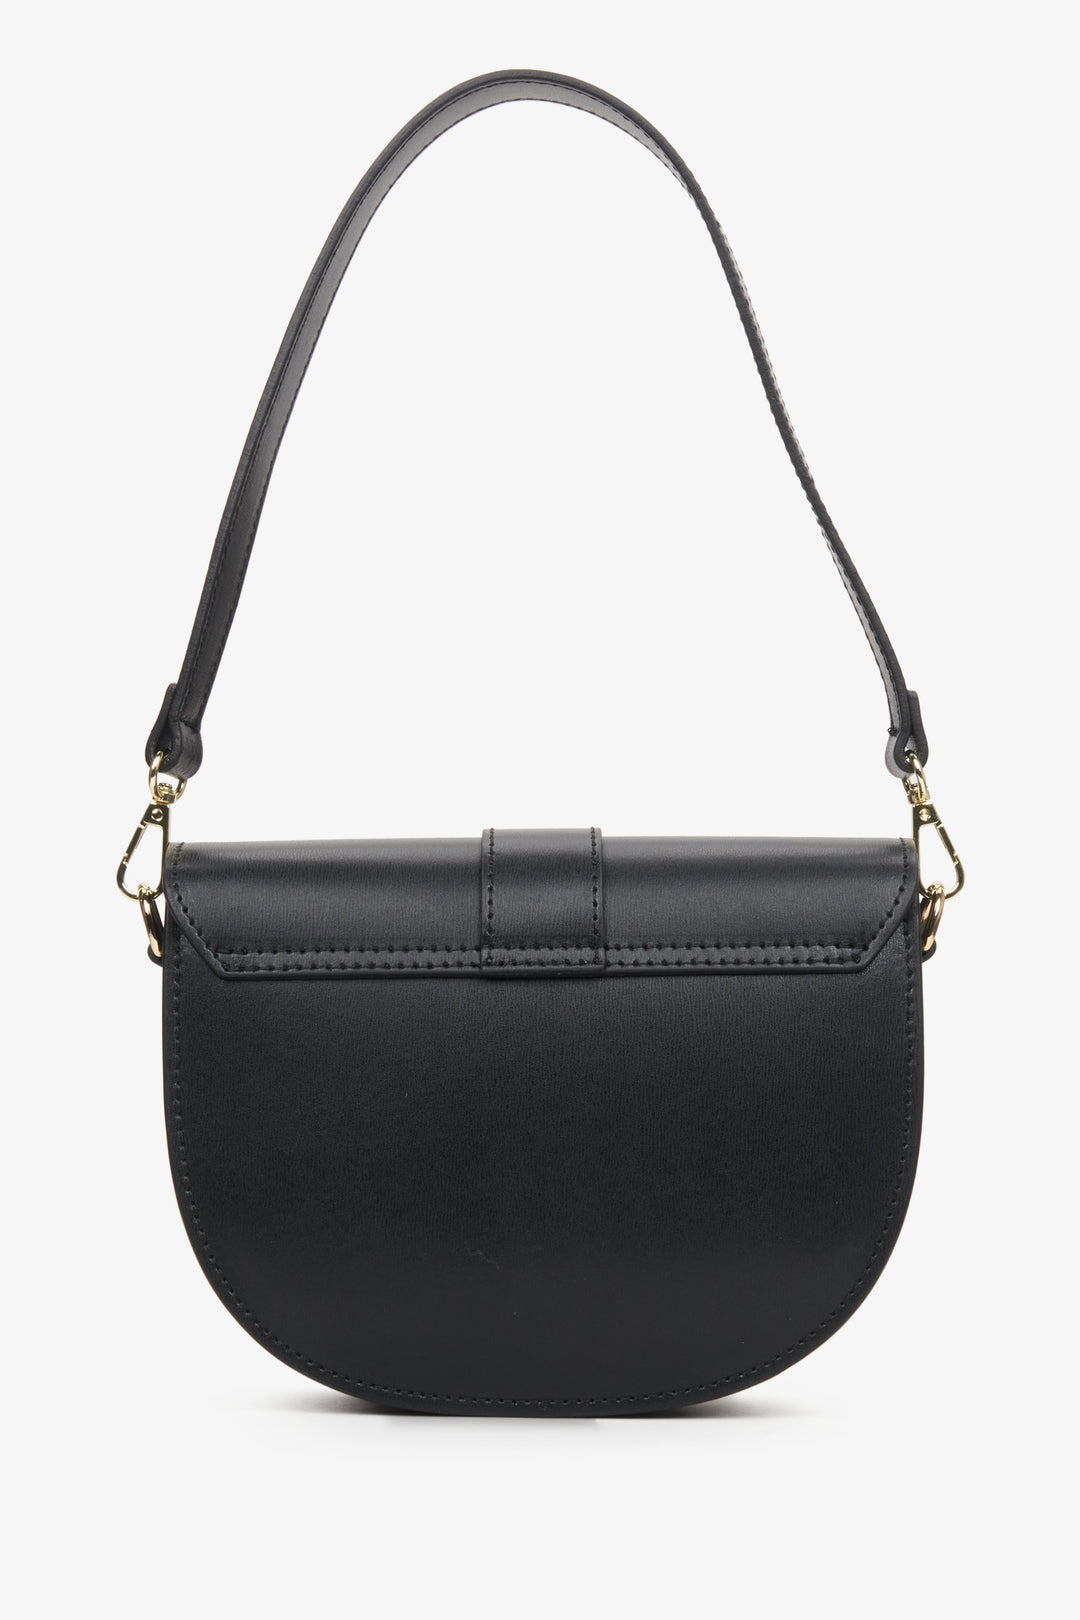 Women's black leather handbag Estro - reverse.